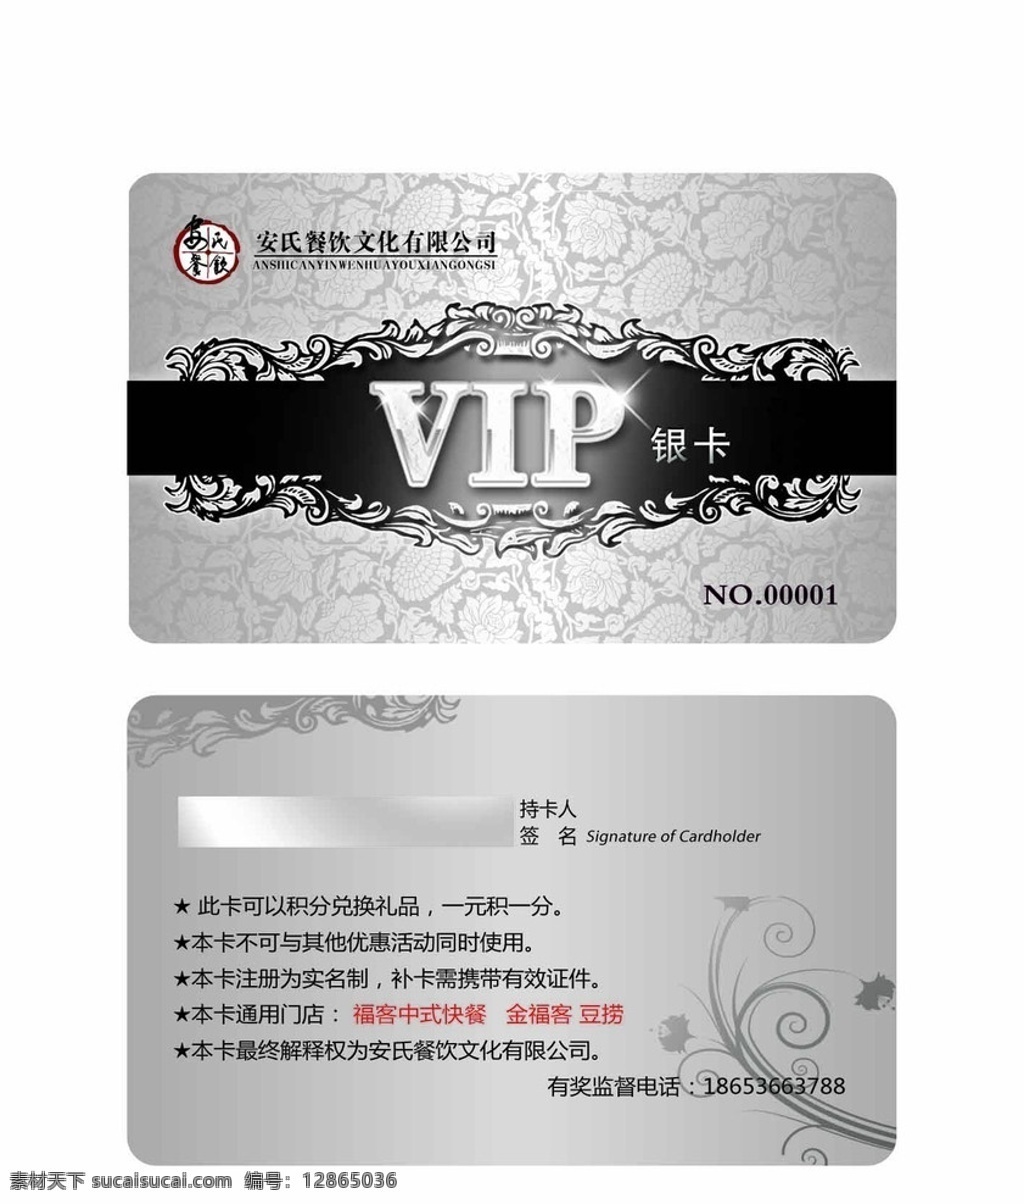 vip银卡 会员 vip 银卡 优惠卡 花纹 底图 金卡 会员卡 高档 酒店 名片卡片 广告设计模板 源文件